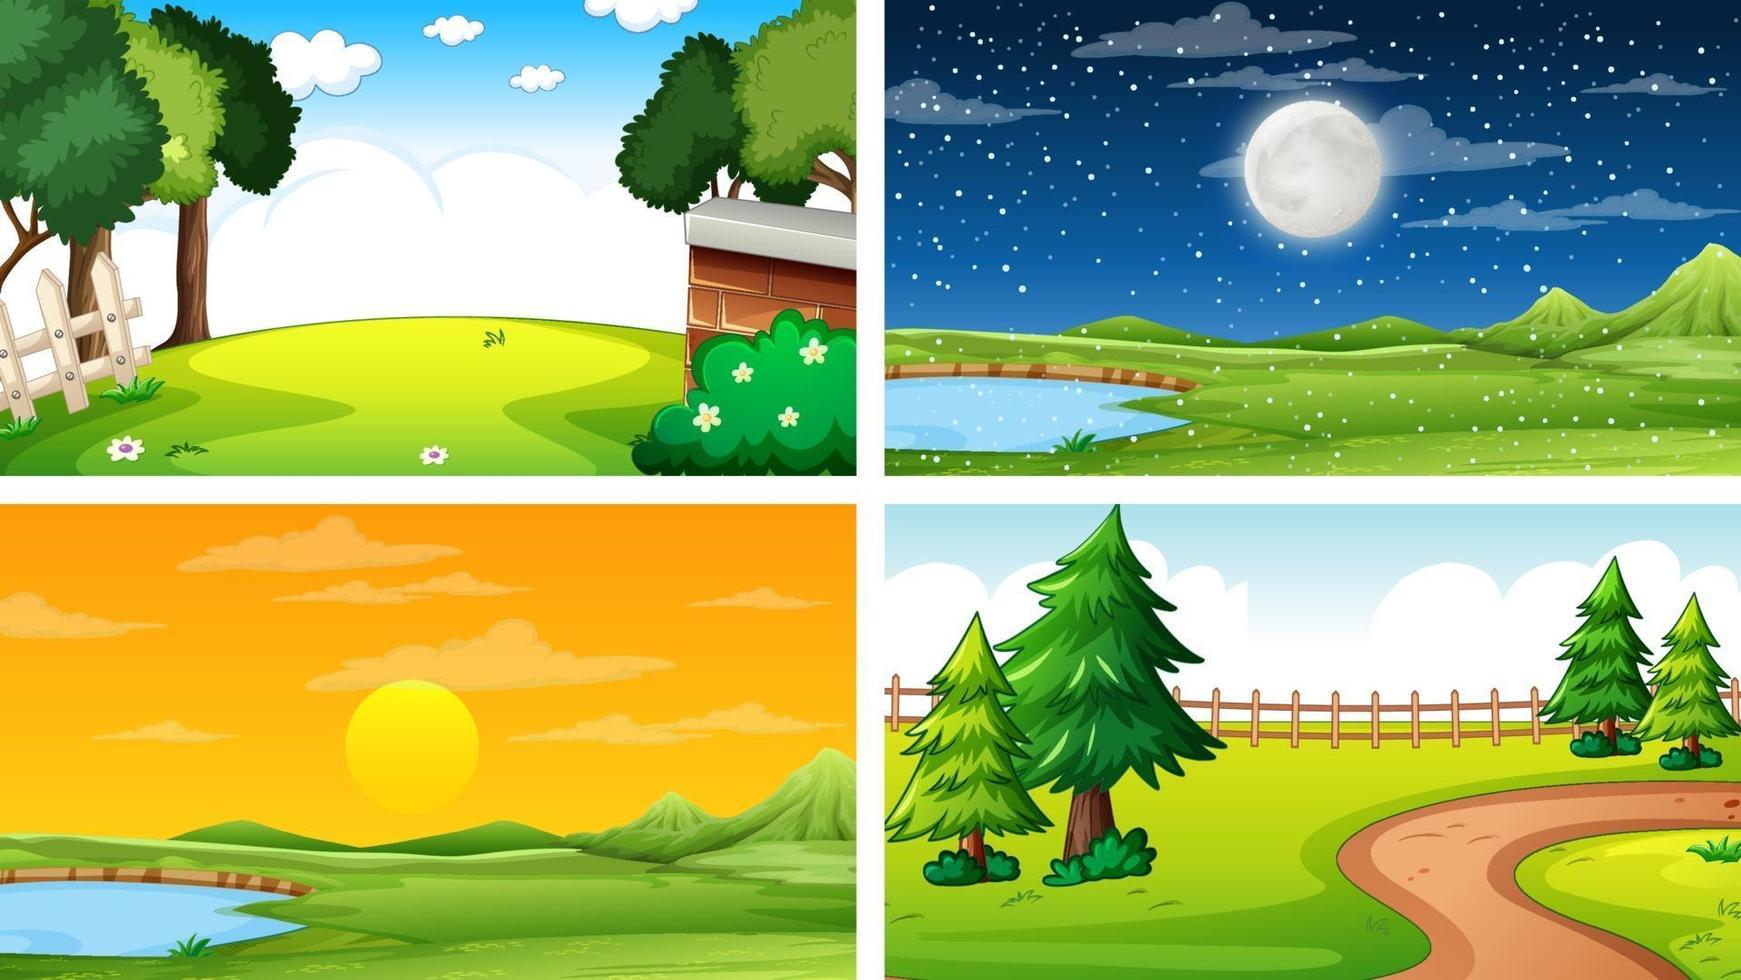 fyra olika scener av naturpark och skog vektor